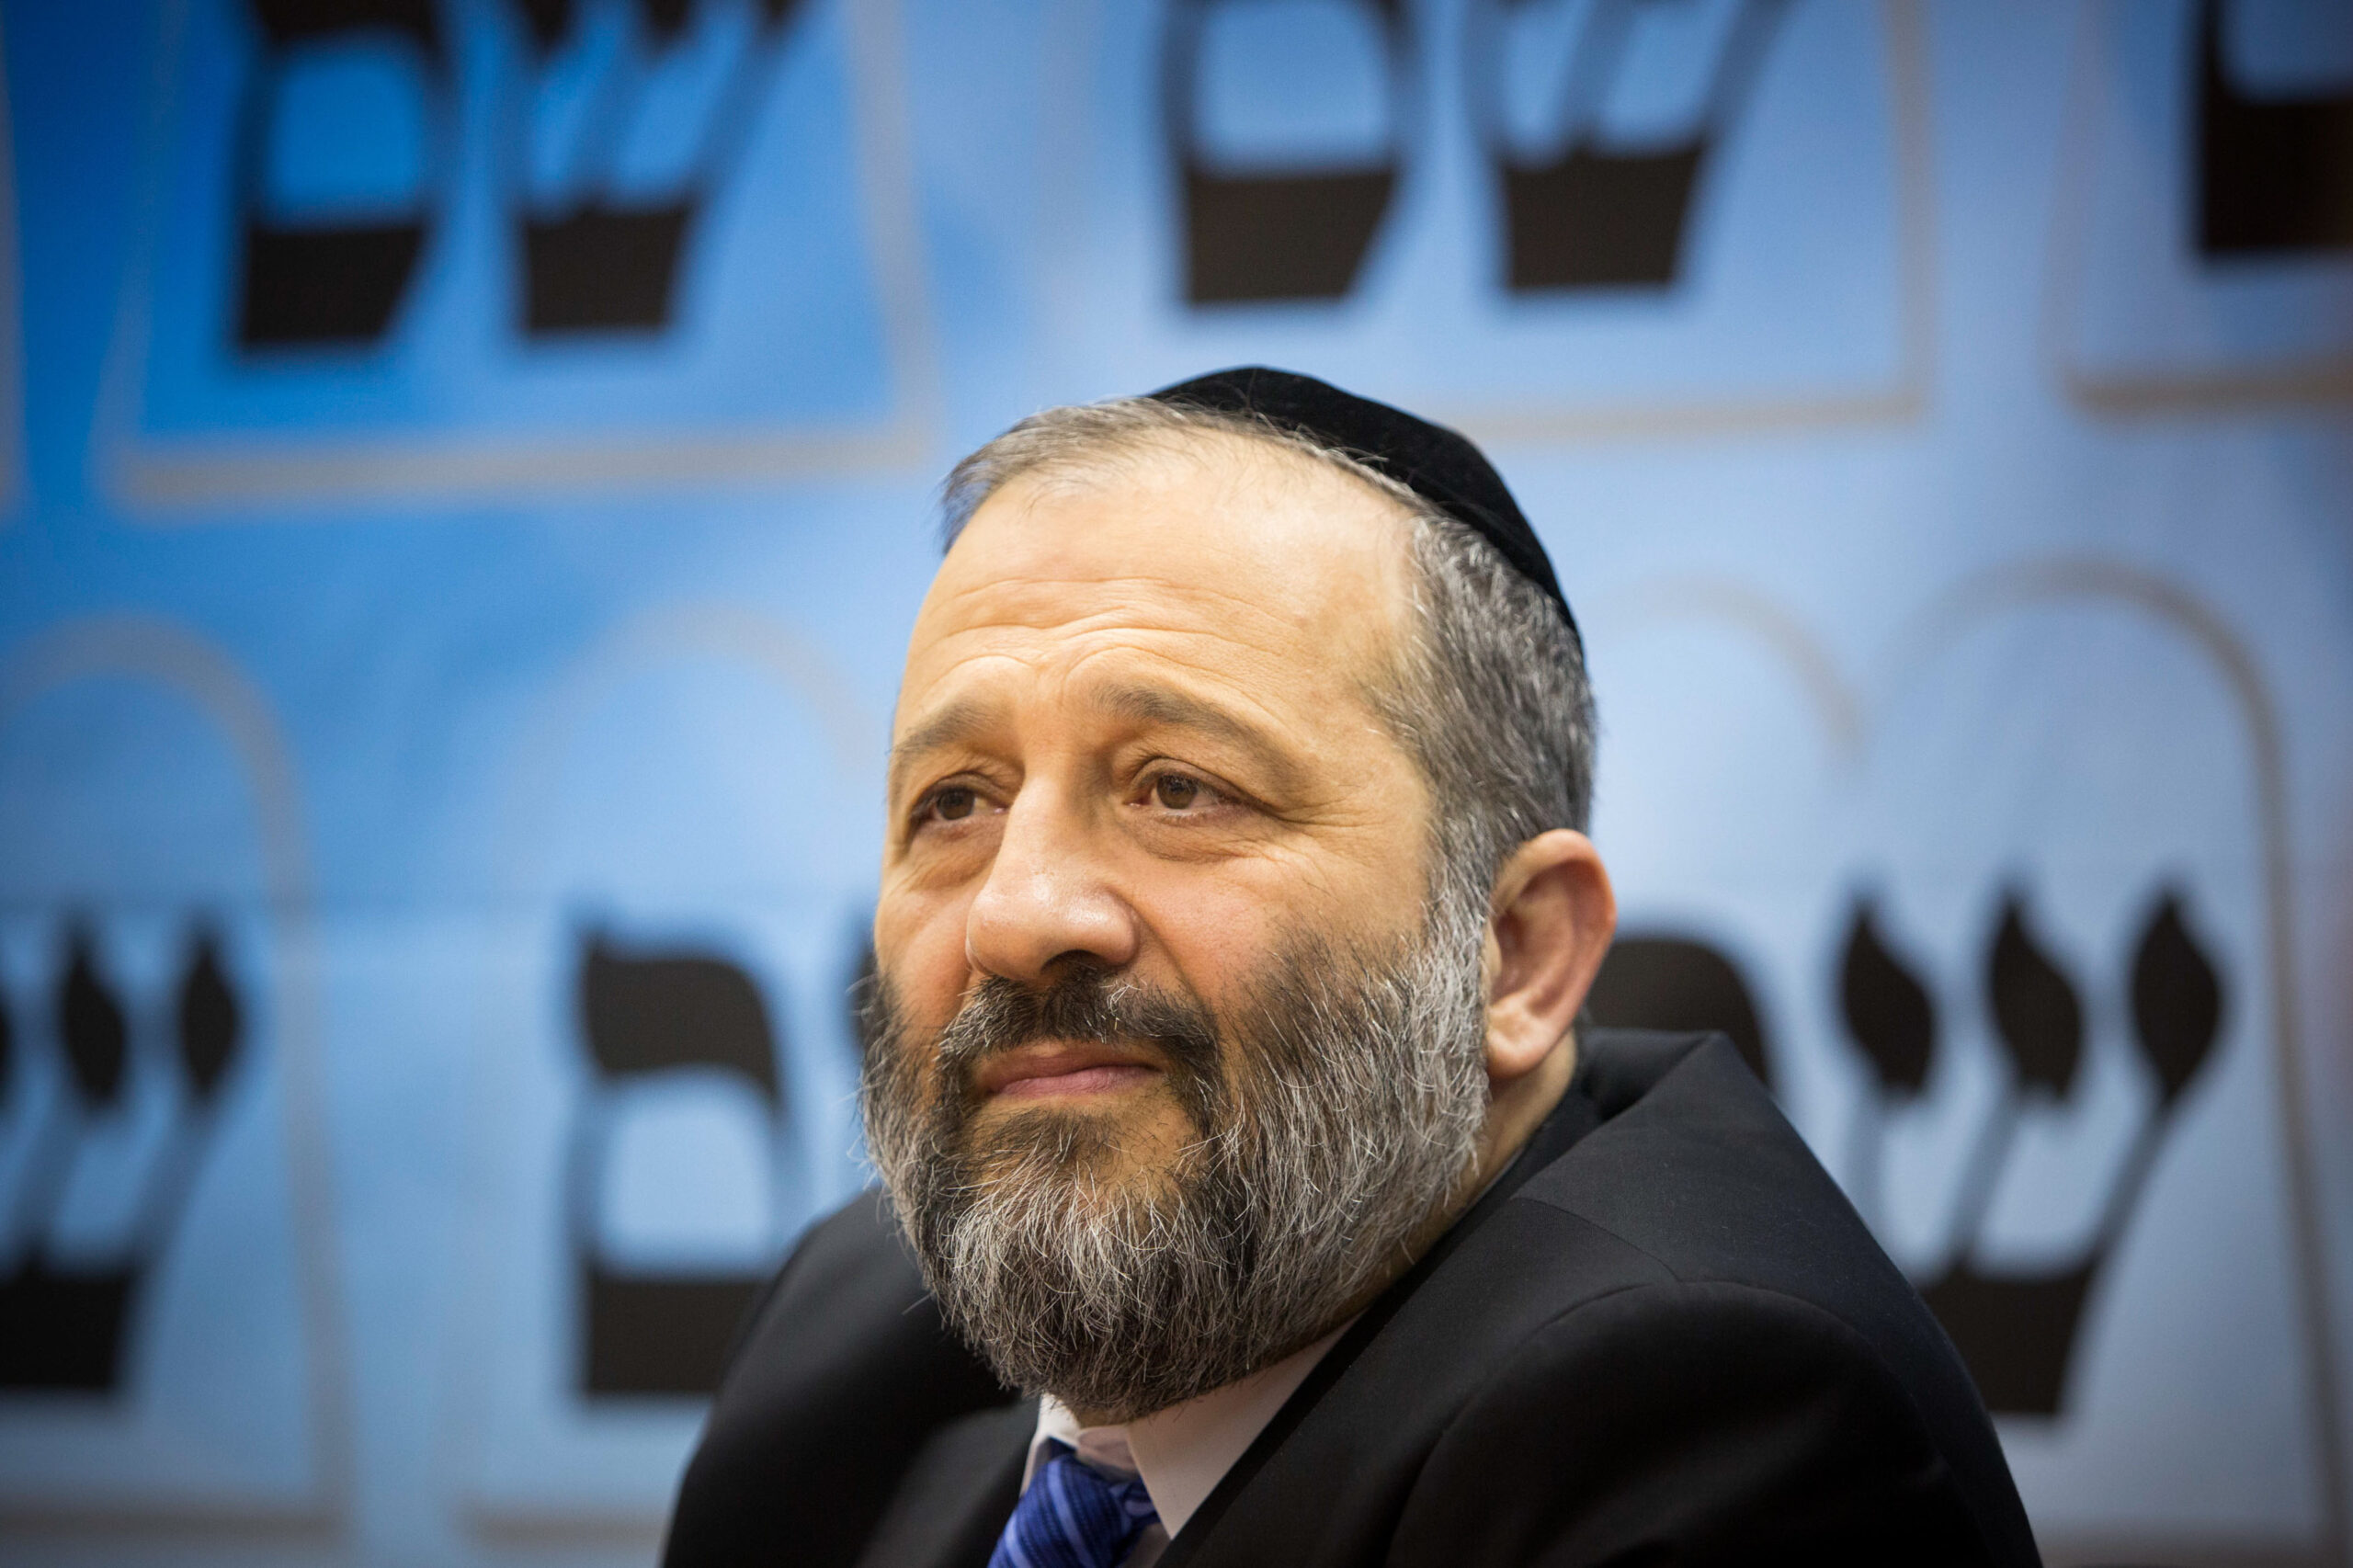 Törvényt módosítottak, hogy egy adócsalás miatt elítélt politikus miniszter lehessen Izraelben | szmo.hu